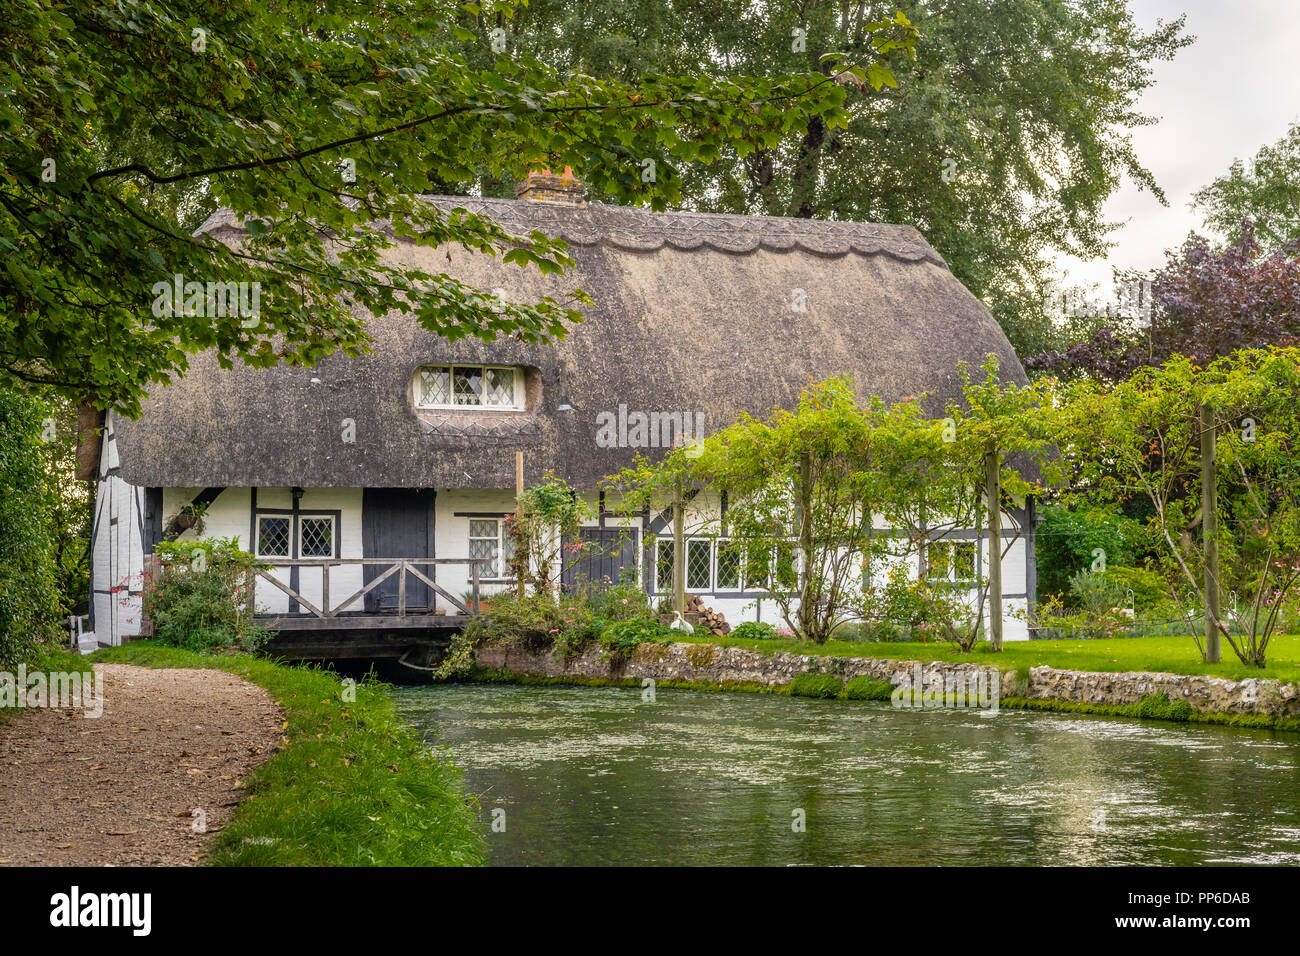 Le Fulling Mill, un cottage traditionnel en toit de chaume, le long de la rivière à New Alresford pendant l'été 2018, Hampshire, Angleterre, Royaume-Uni Banque D'Images